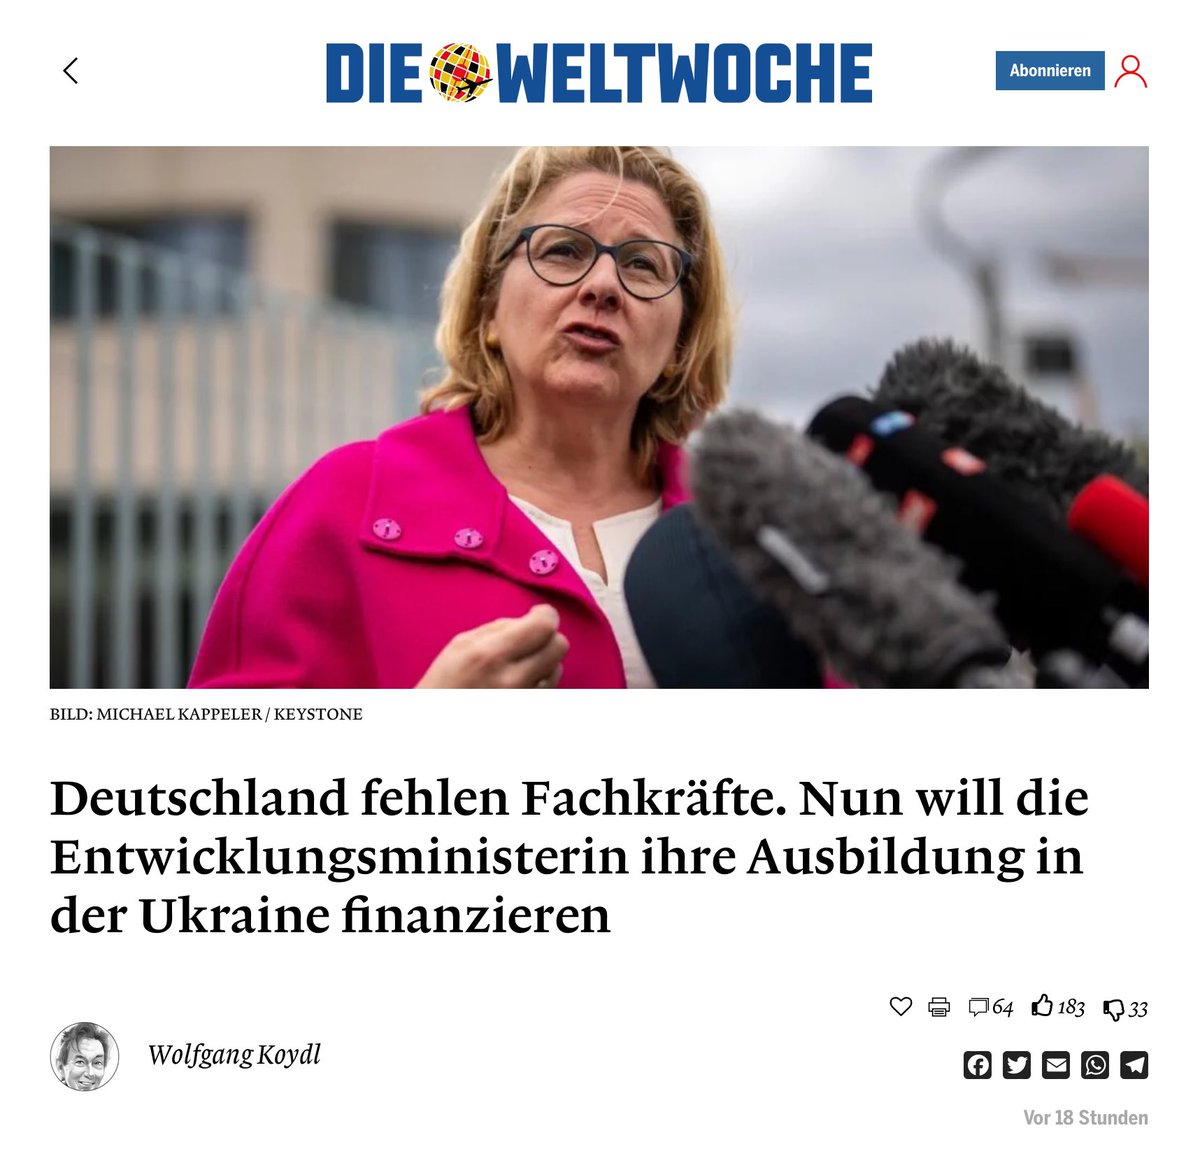 “Nun hat sich Entwicklungsministerin Svenja Schulze des Themas angenommen. Sie verspricht, dass Deutschland die Ausbildung von Fachkräften in grossem Stil finanzieren werde. Super!
In der Ukraine.
Ja, richtig gelesen. Dort werden mit deutschen Steuergeldern die durch Tod und…